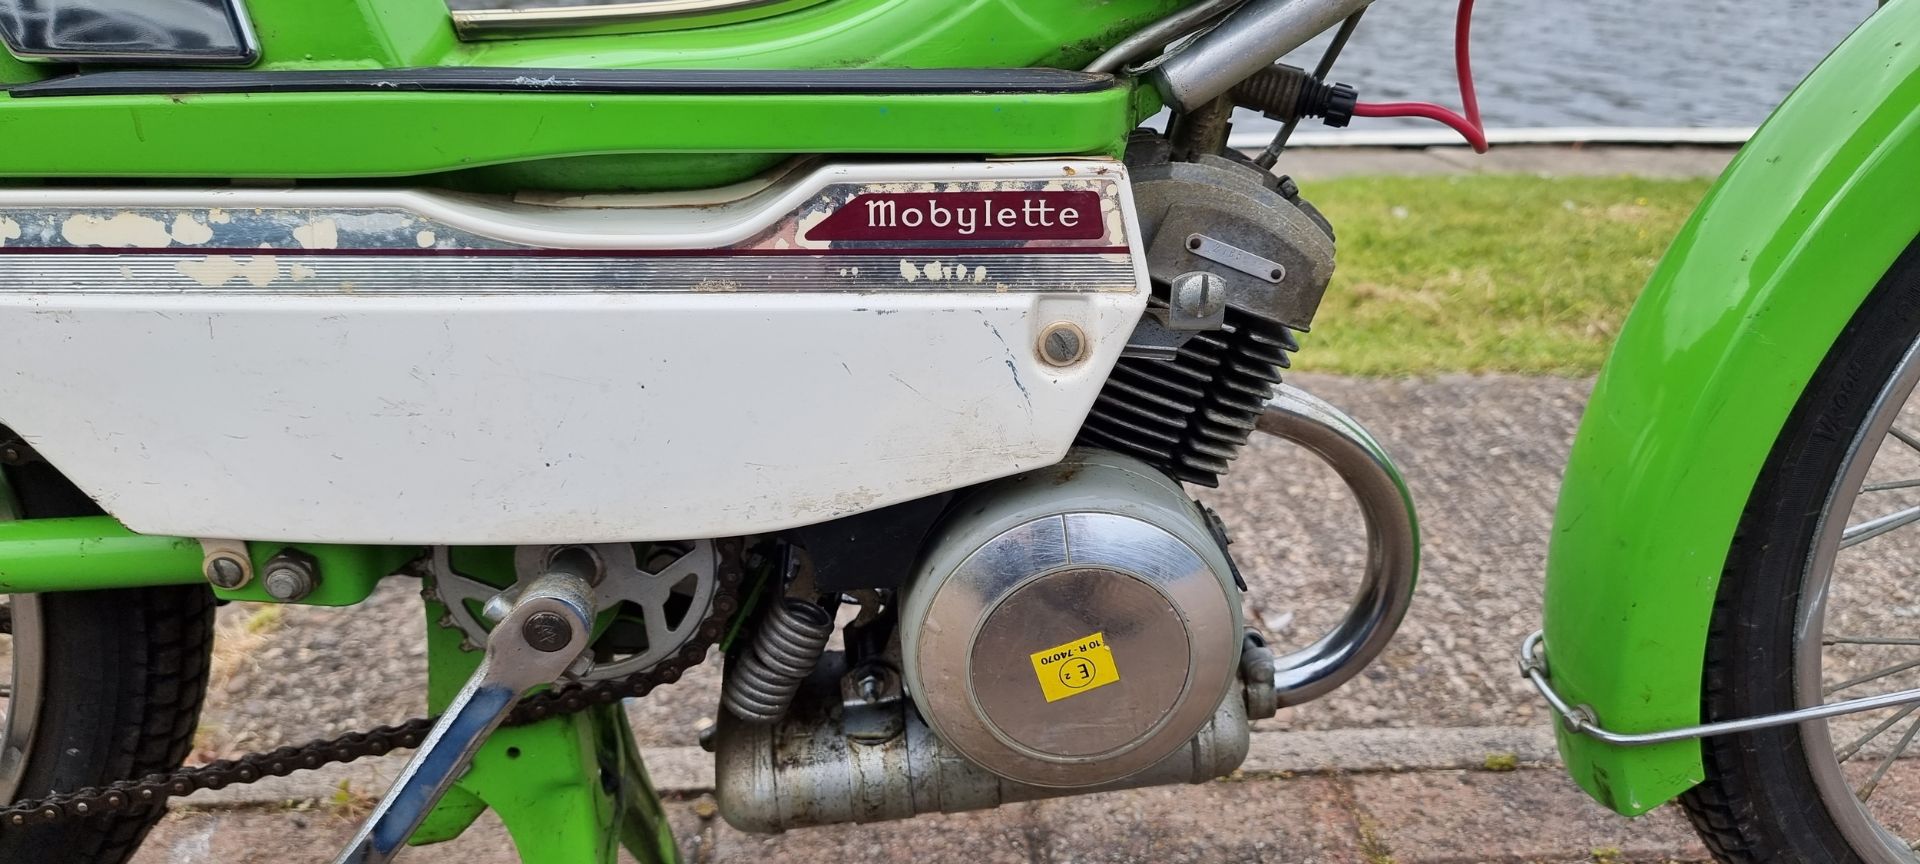 1976 Mobylette Motobecane, 49cc. Registration number KFU 136P. Frame number 05526620. Engine - Image 3 of 13